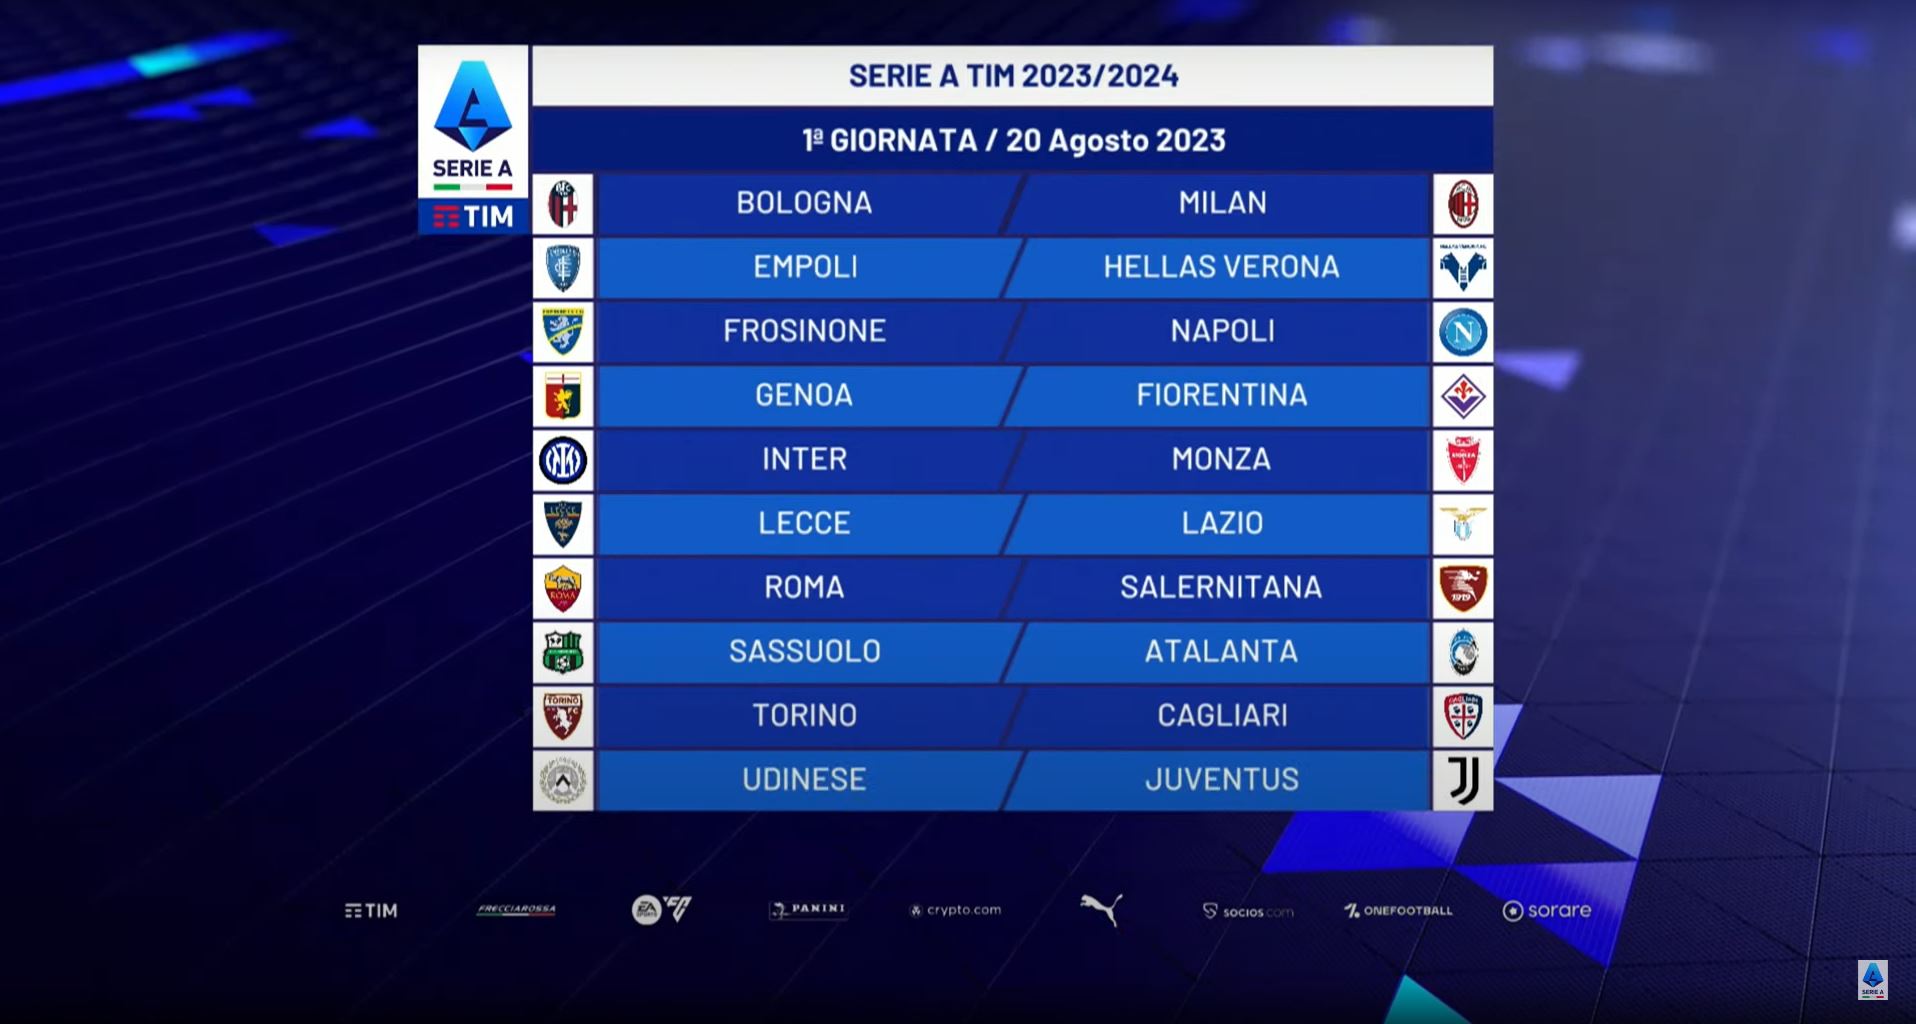 Calendario Serie A, il sorteggio delle partite giornata per